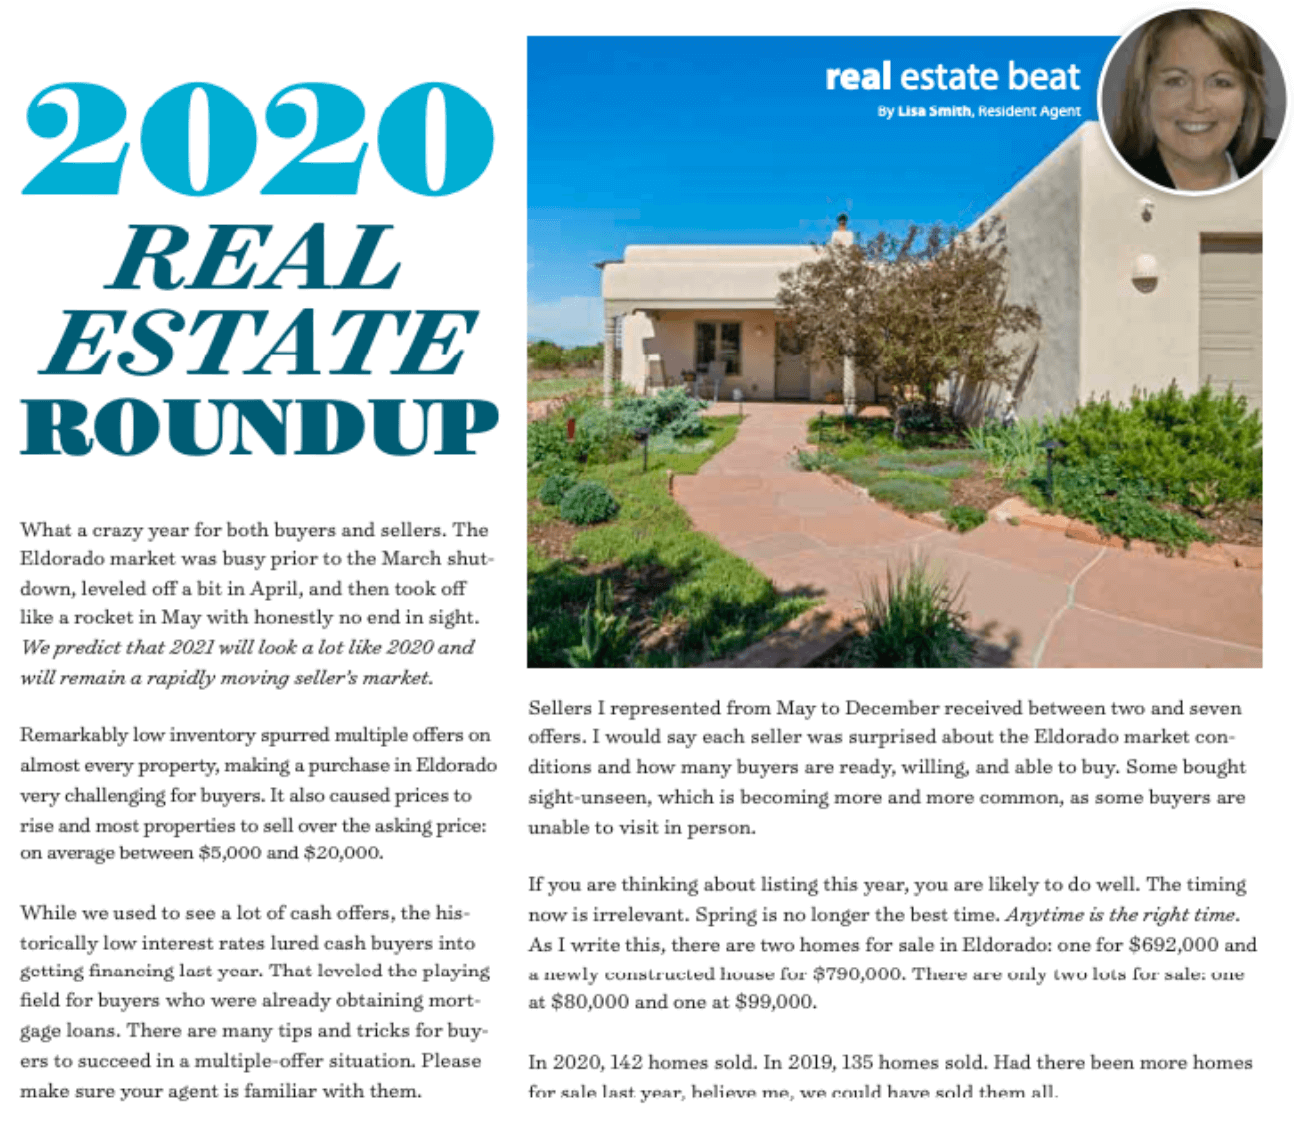 Lisa Smith real estate column Eldorado Living Feb 2021